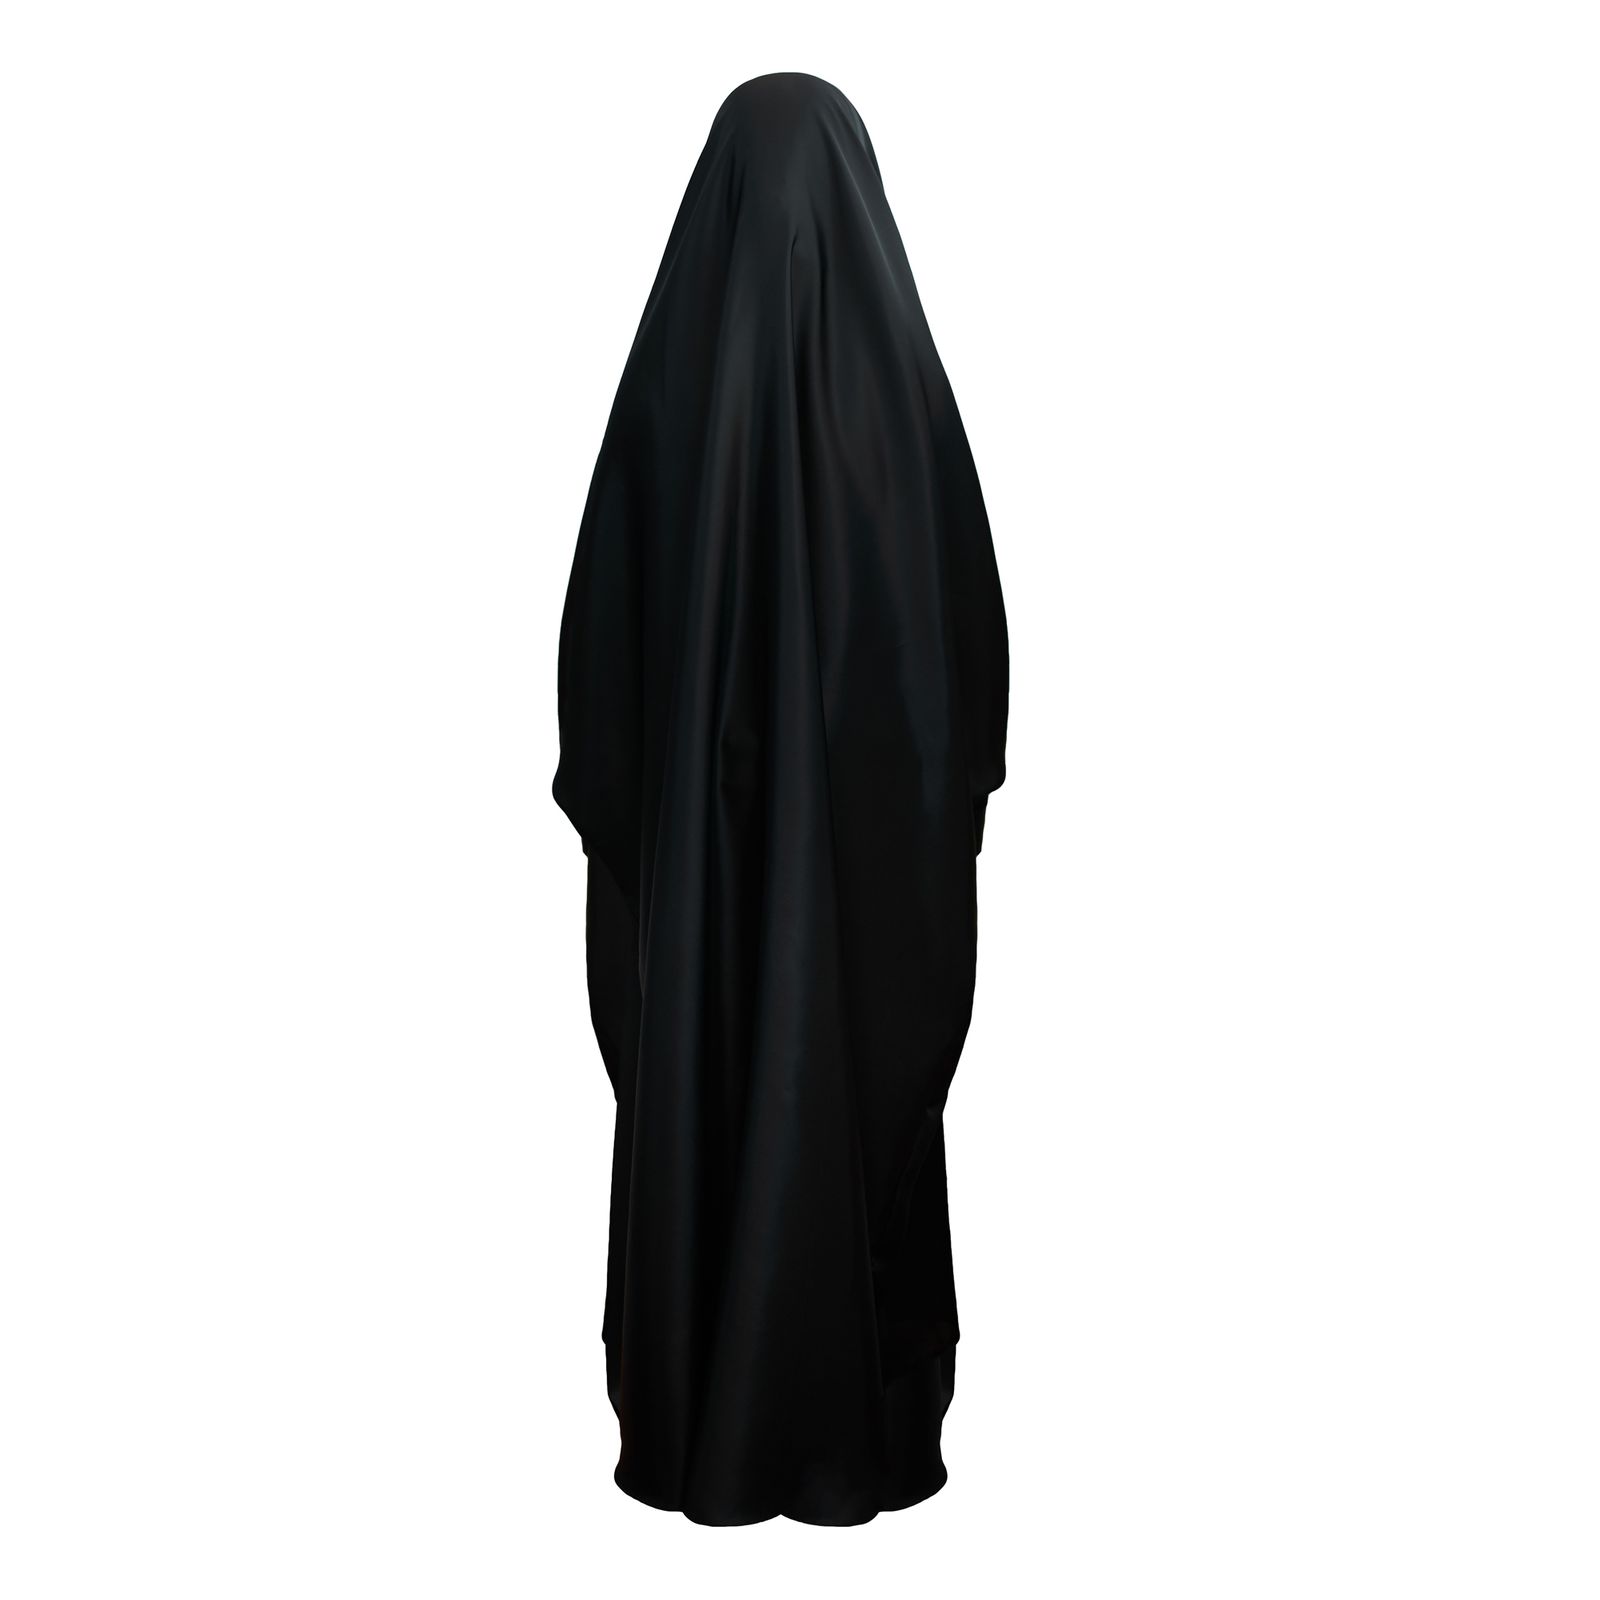 چادر دانشجویی دخترانه حجاب فاطمی کد sat09 -  - 2